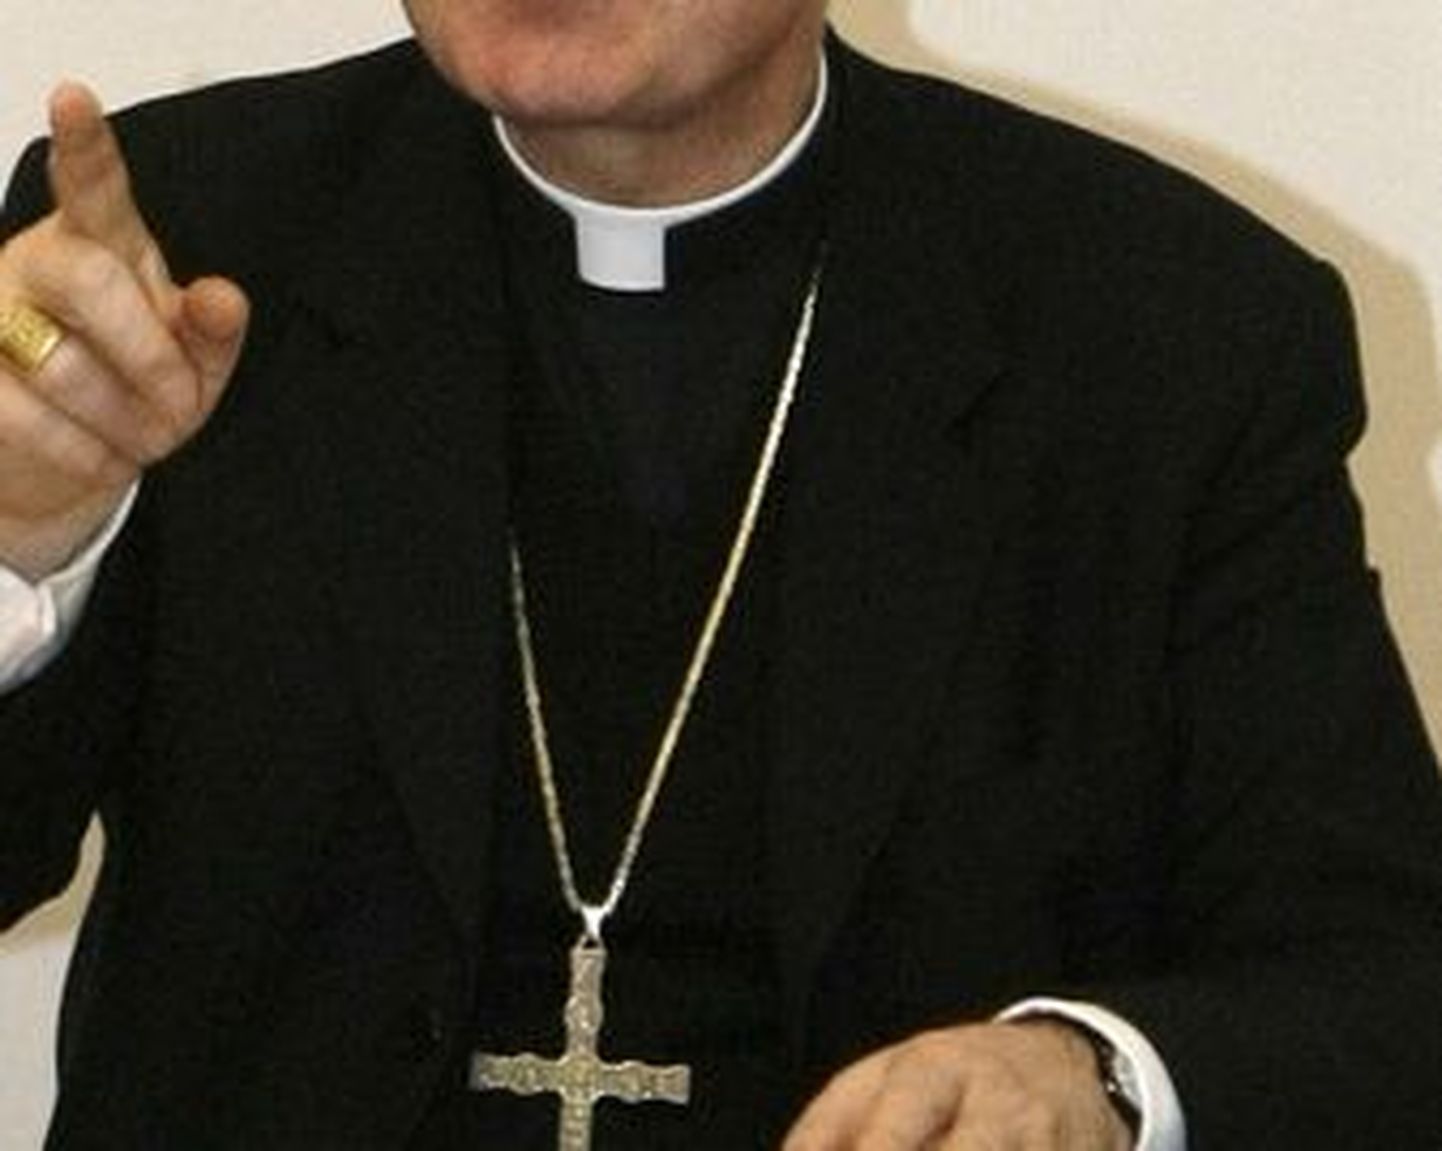 Katoliku kiriku preester tegeles lapspornoga